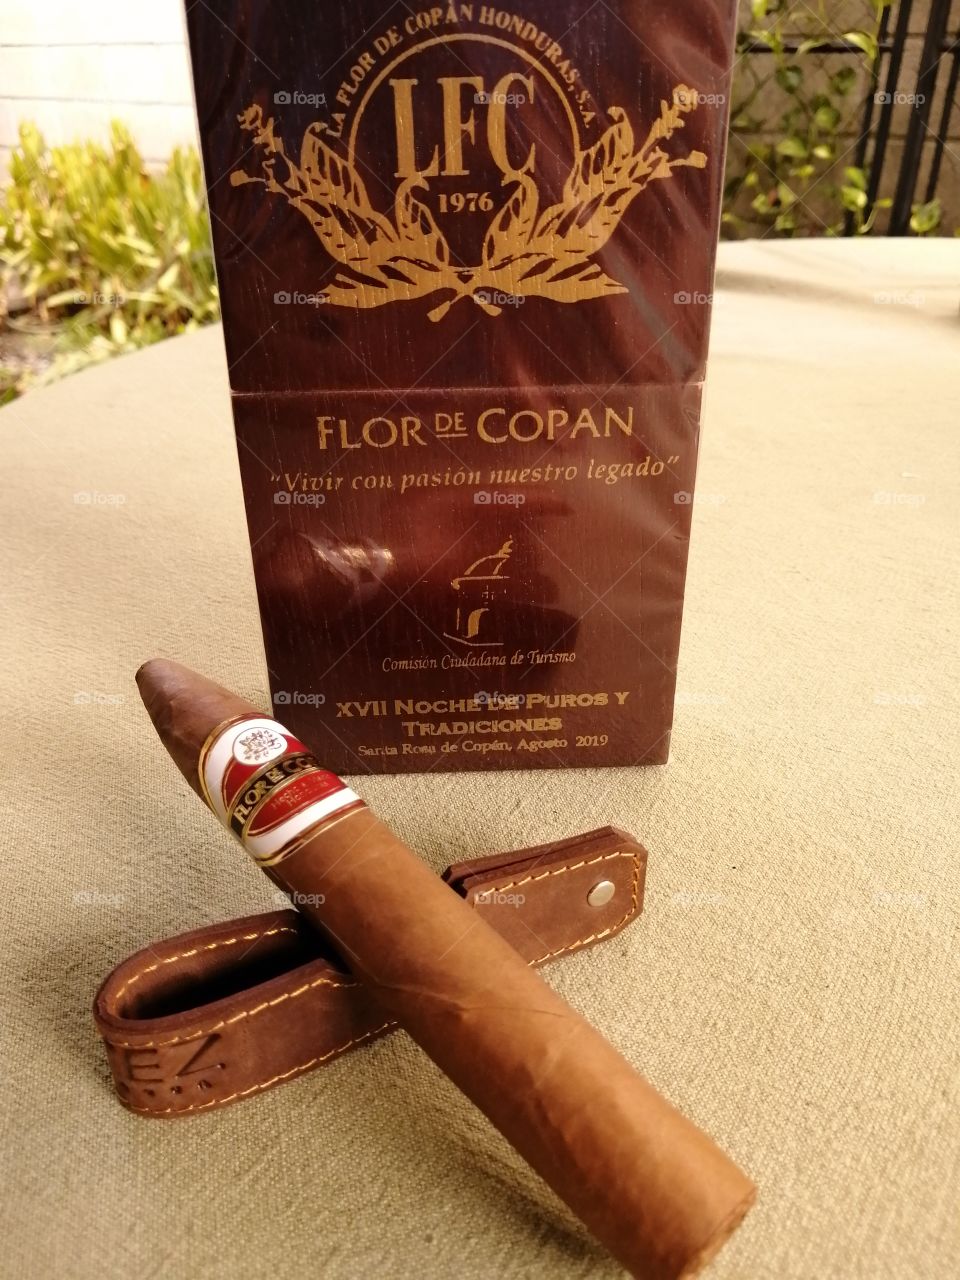 Flor de Copan Cigars